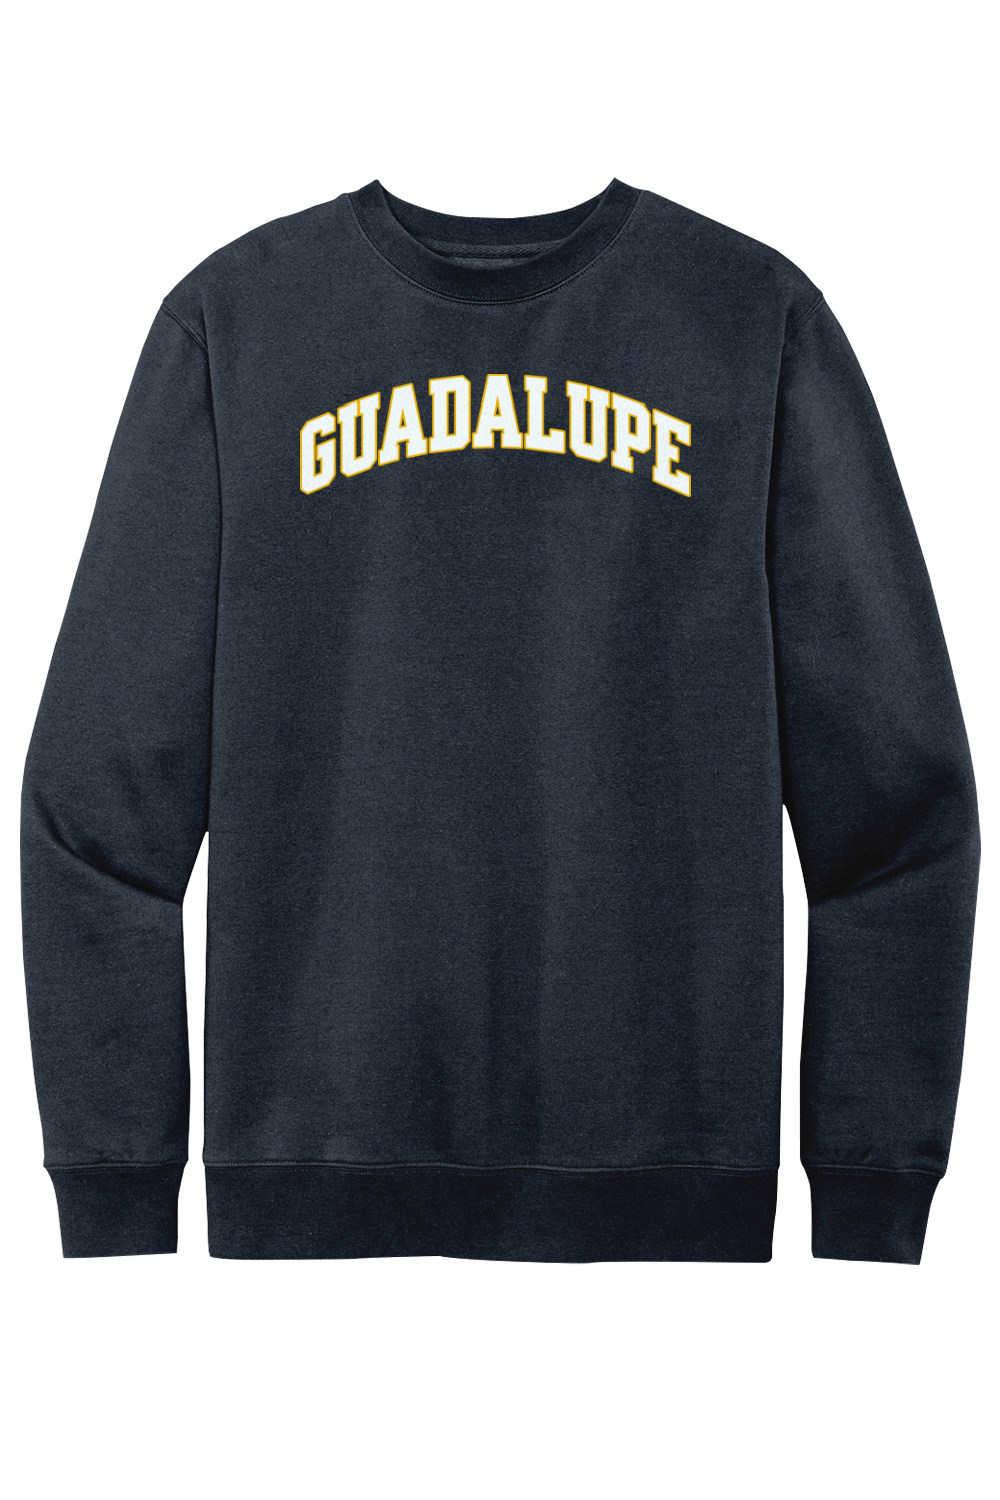 Guadalupe - Collegiate - Crewneck Sweatshirt